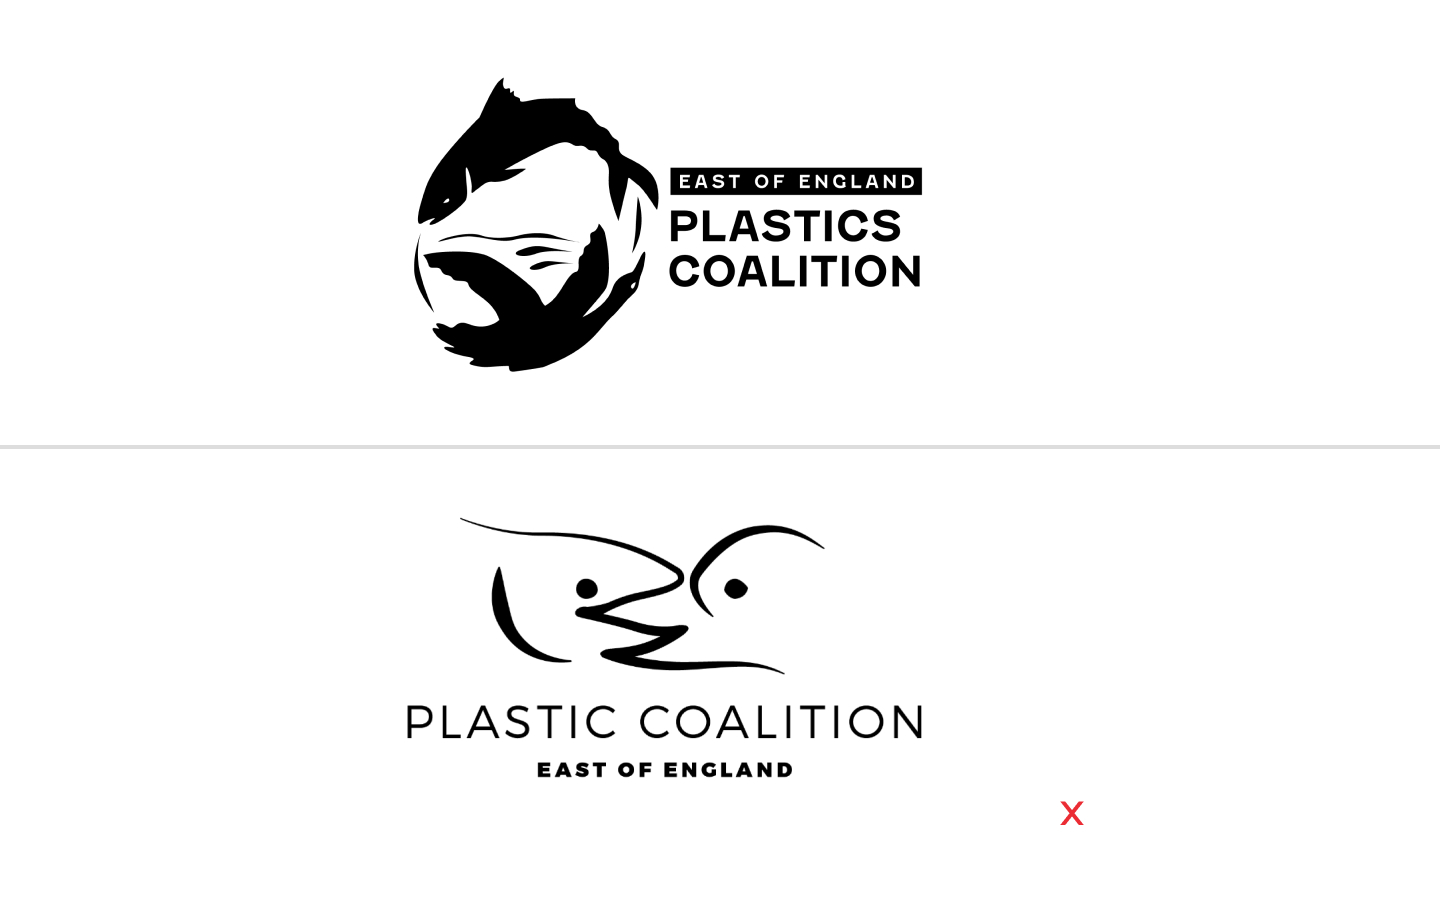 Plastic-Coalition-Paul-Pajot-7